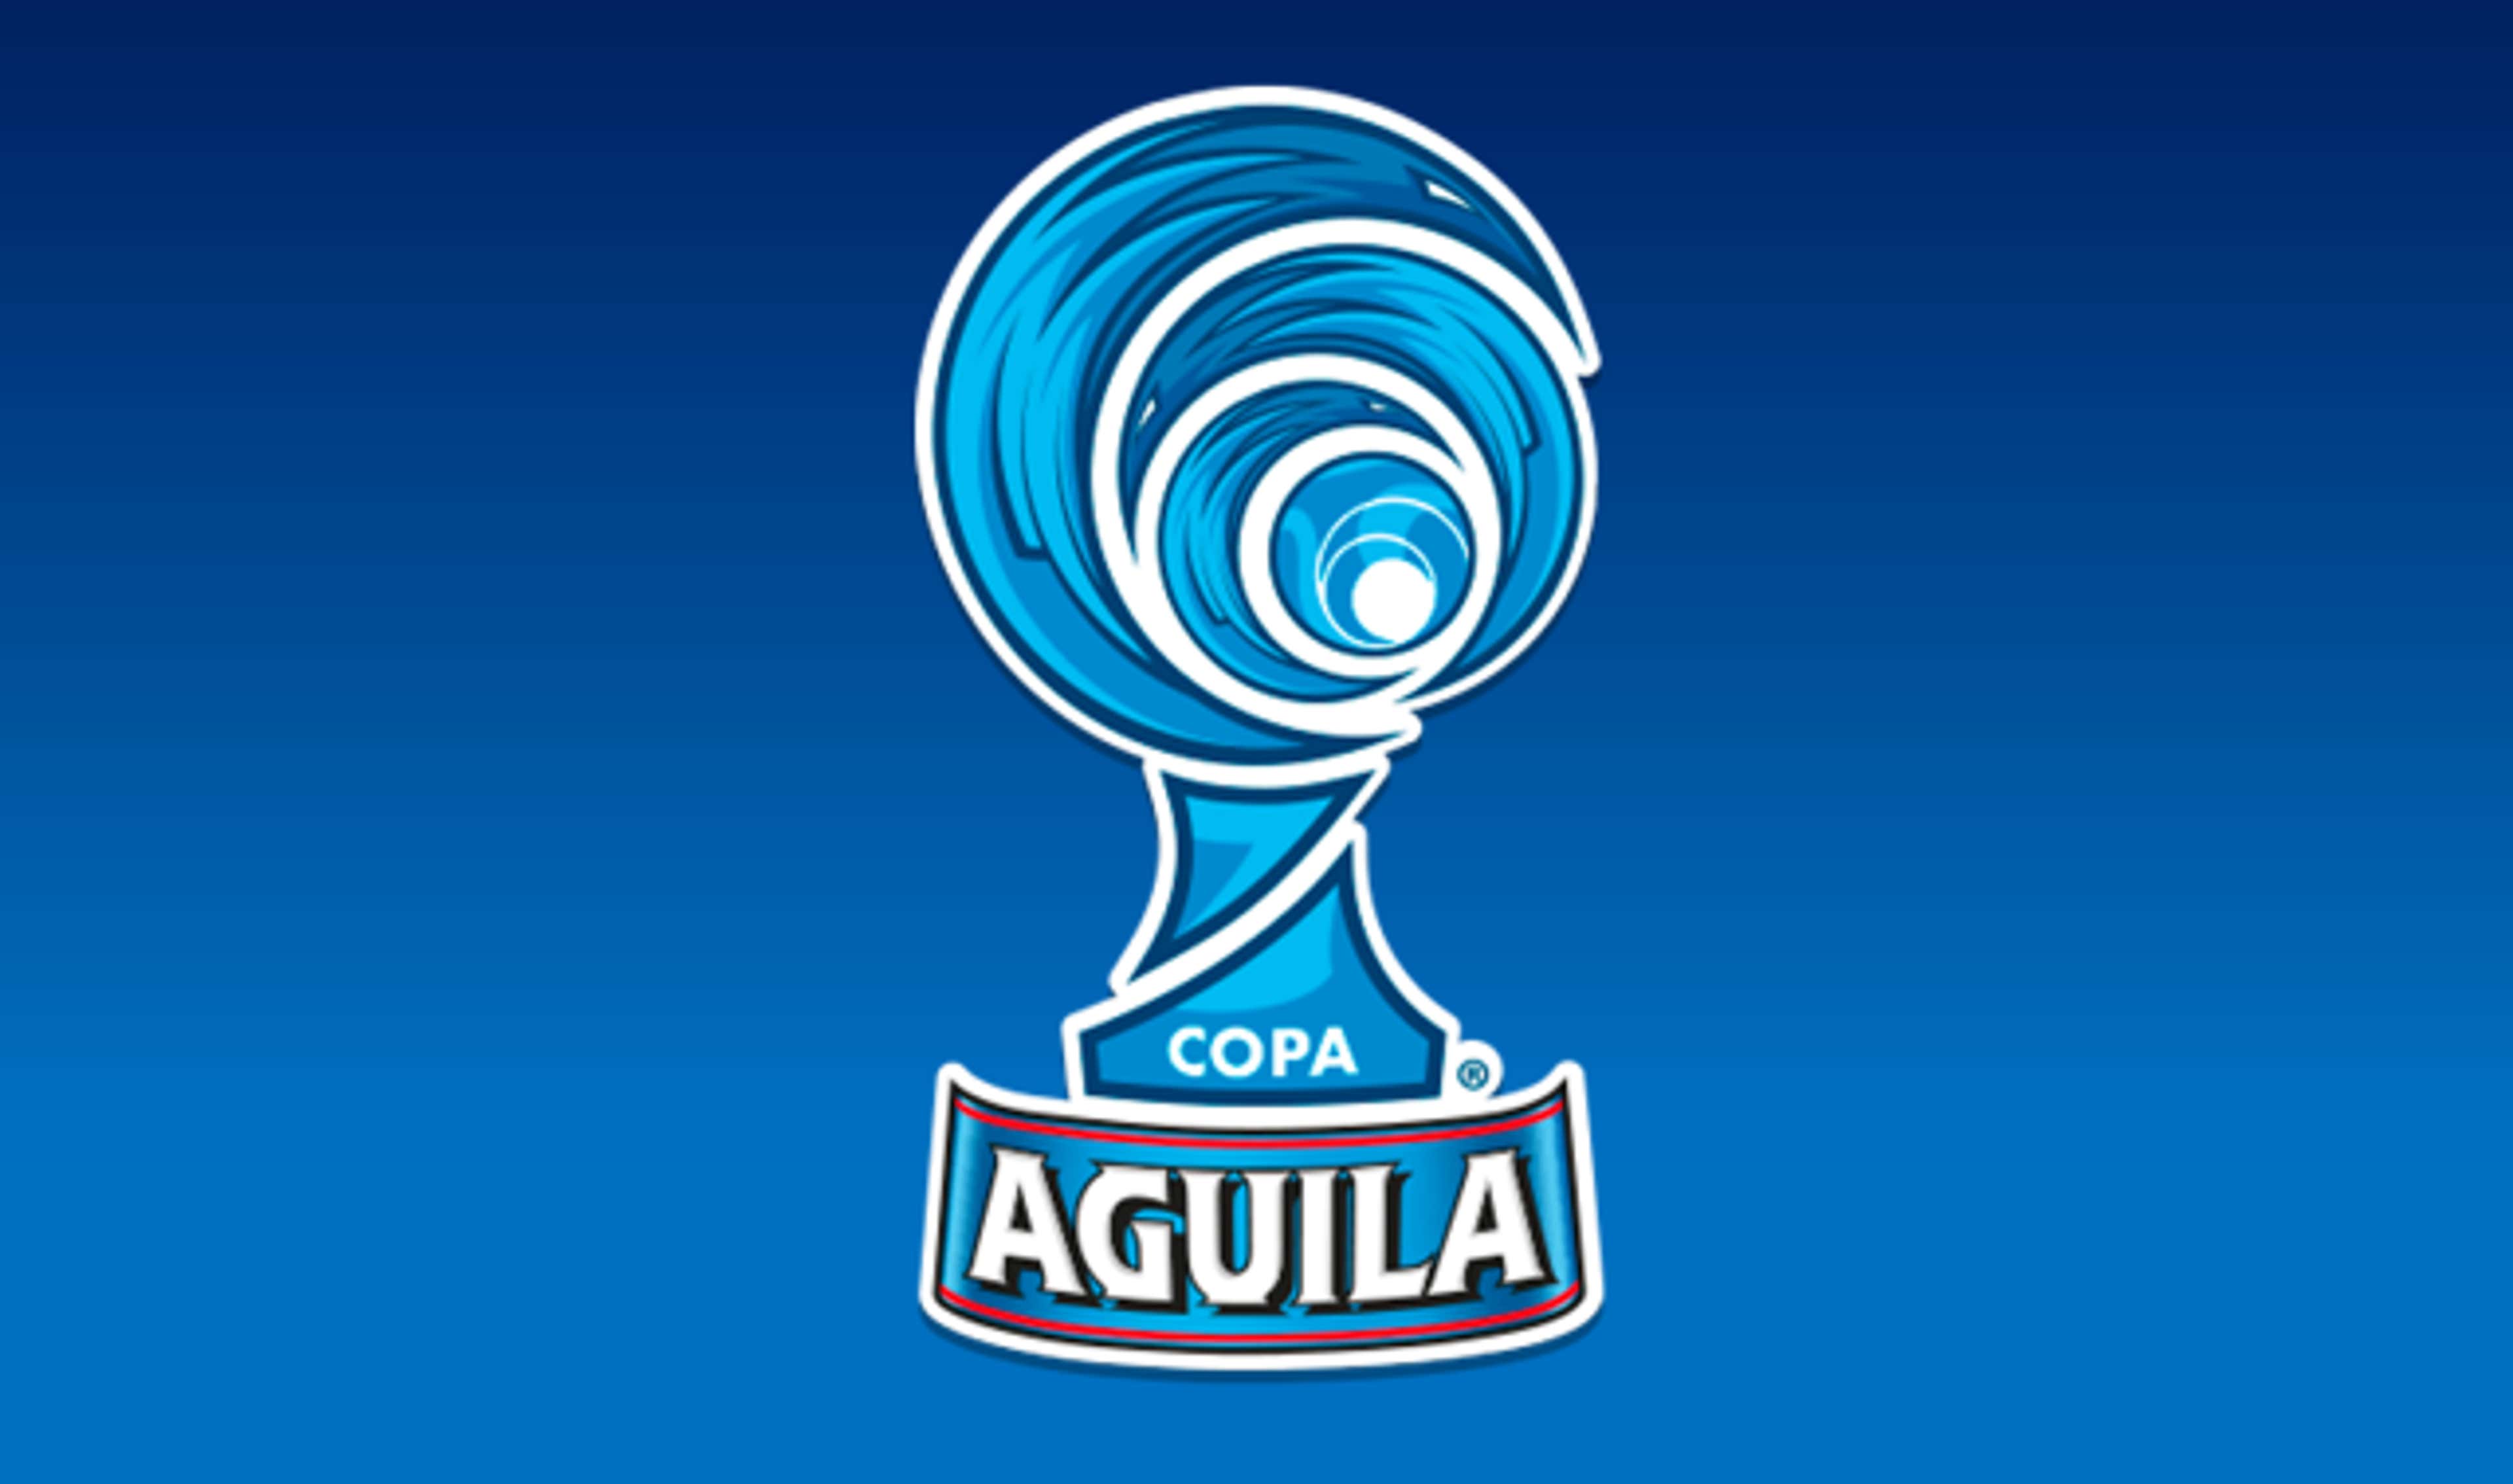 Copa Águila 2017 logo